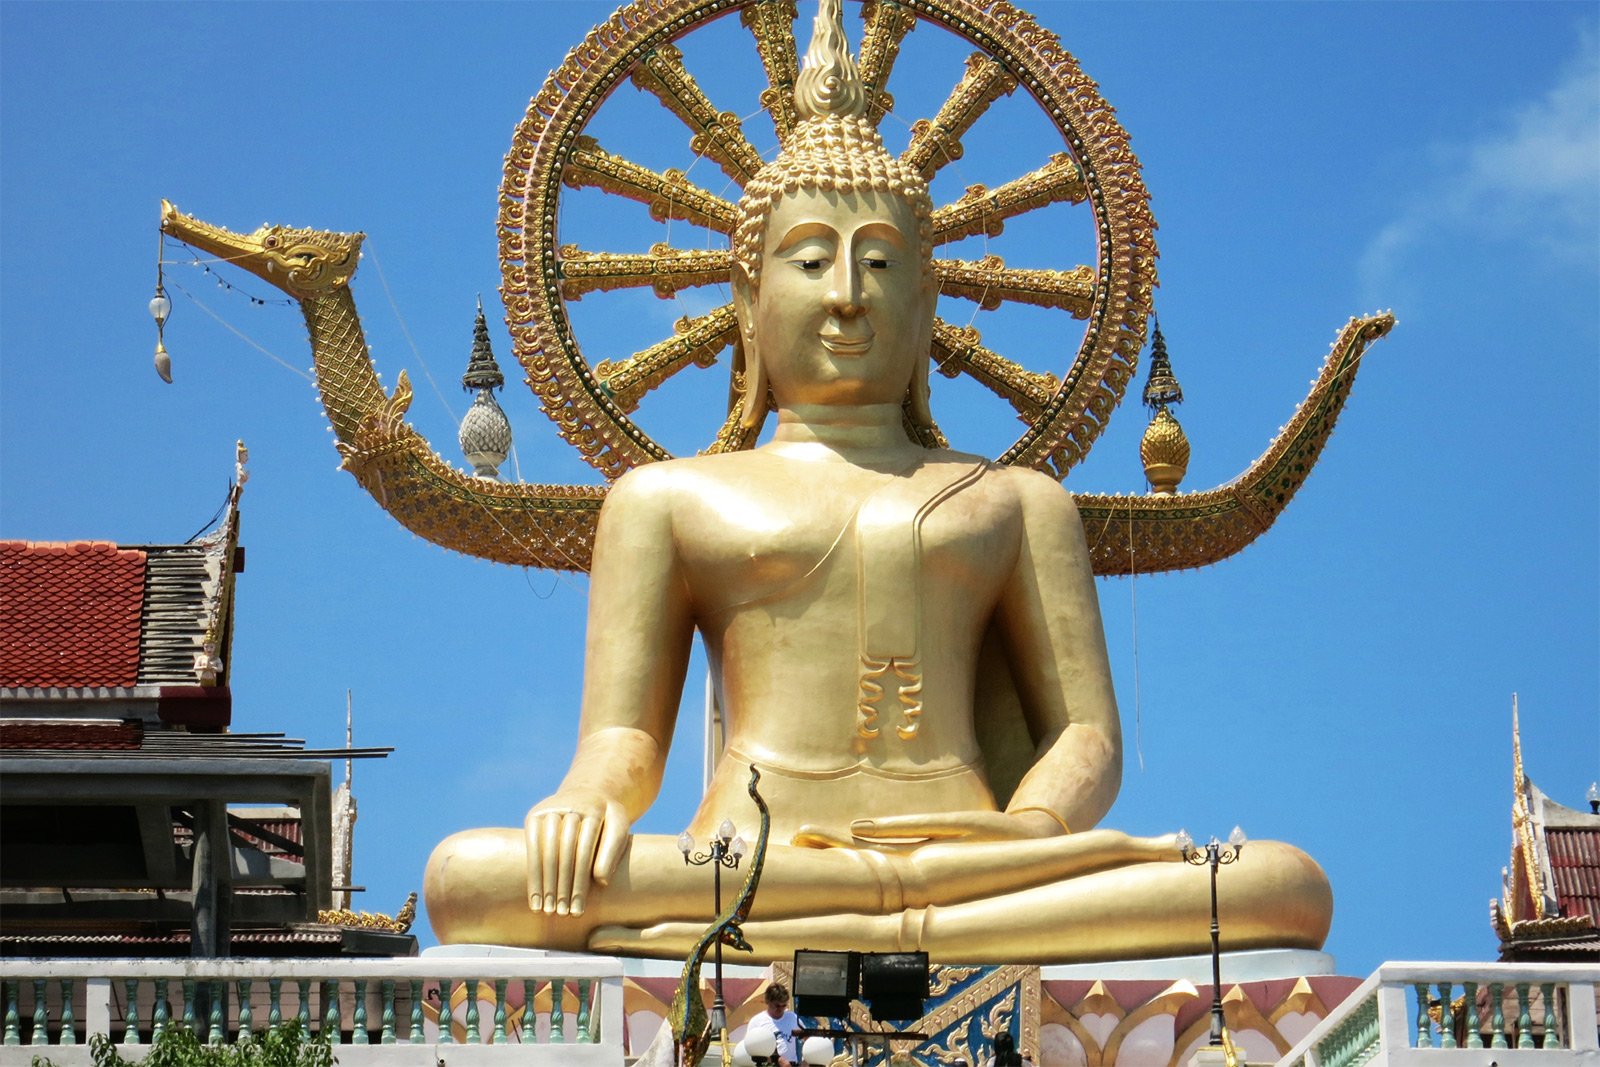 How to make a wish at the Big Buddha on Koh Samui